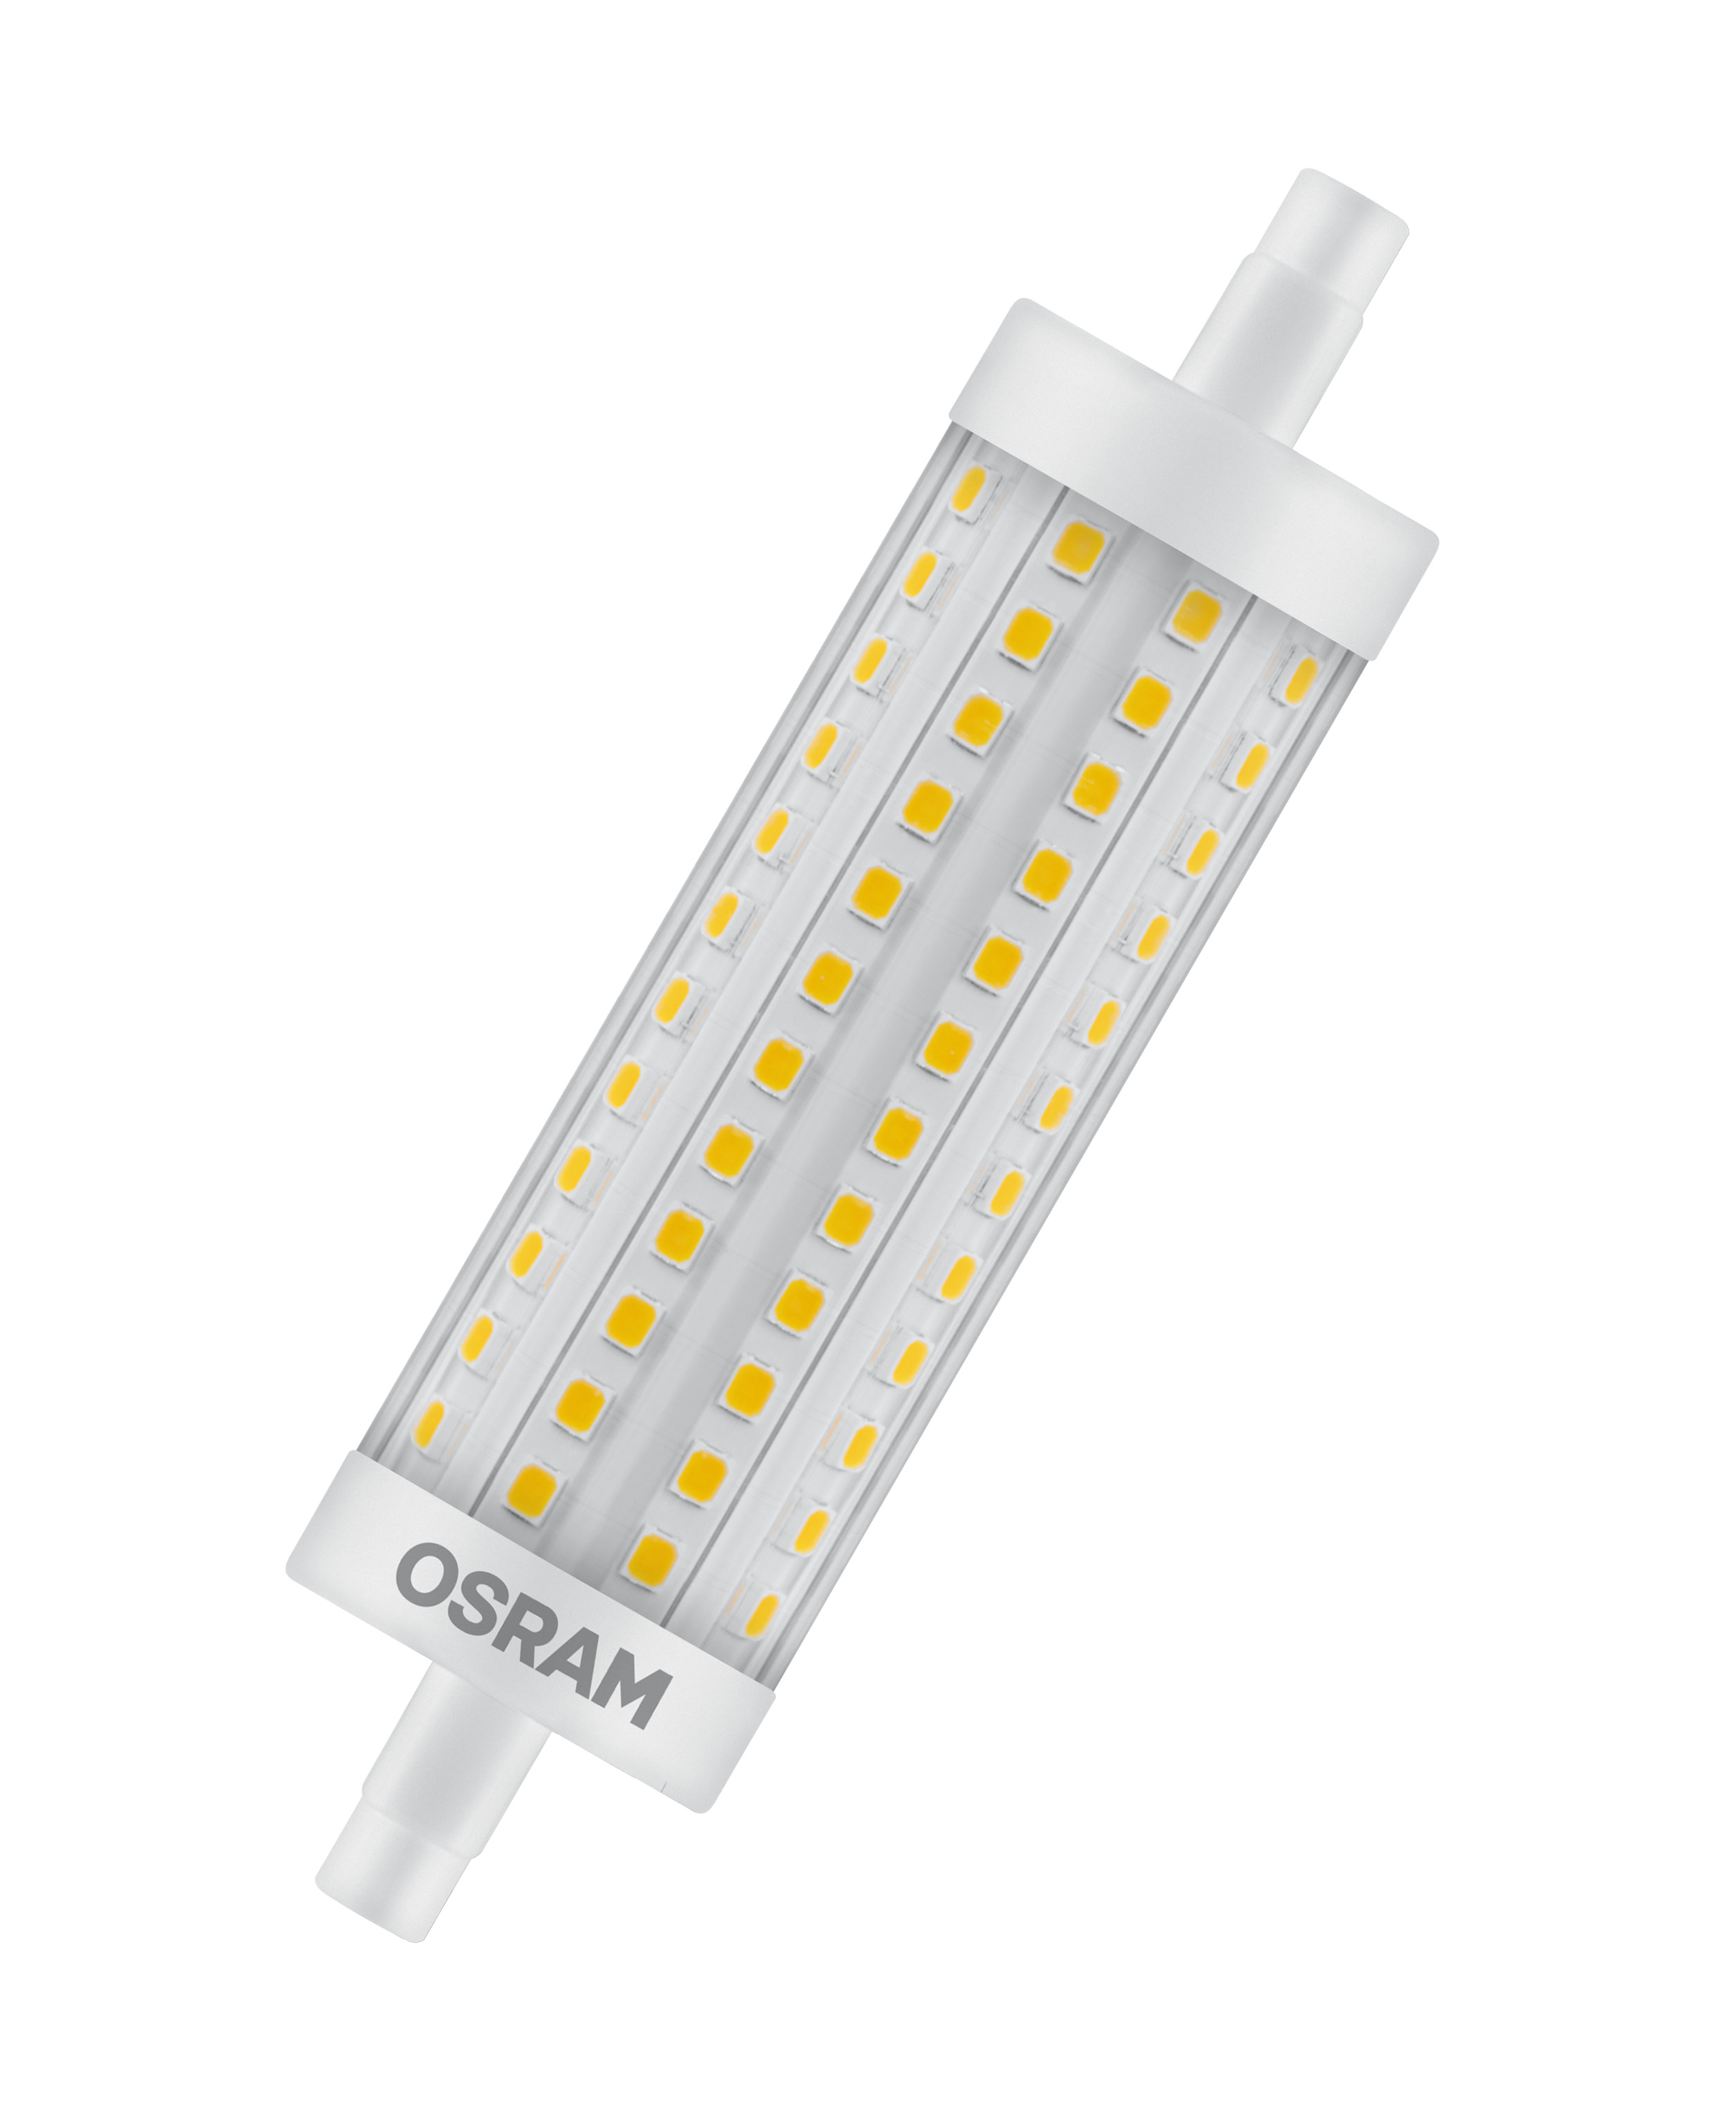 Osram Светодиодная лампа PARATHOM LINE 118 CL 125 15W(замена 125Вт),теплый белый свет (827), цоколь R7S